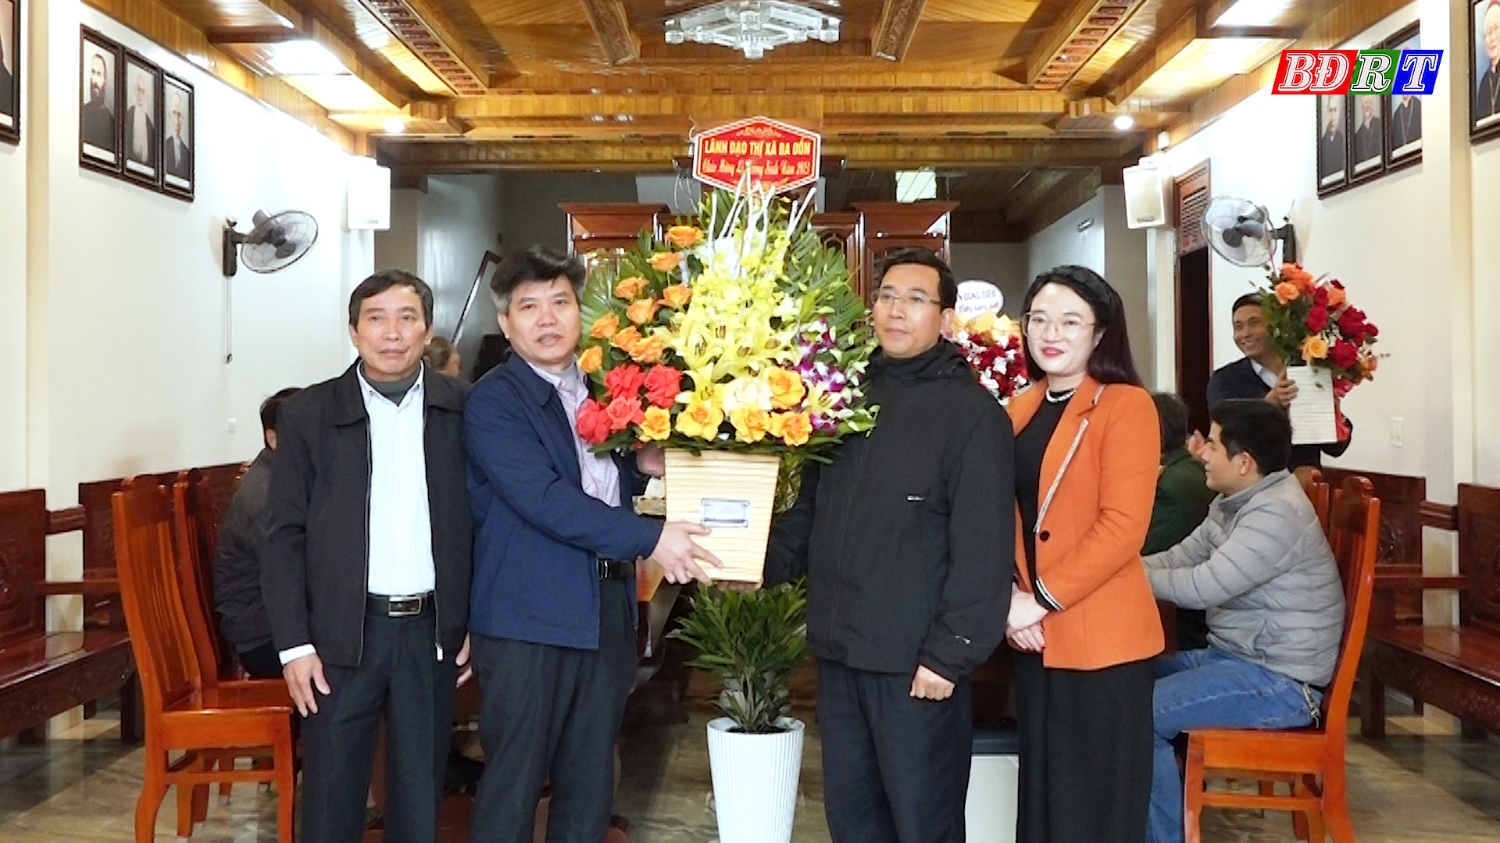 Đồng chí Trần Thanh Hưng Trưởng Ban Dân Vận Thị ủy thăm và tặng quà tại giáo xứ Nhân Thọ